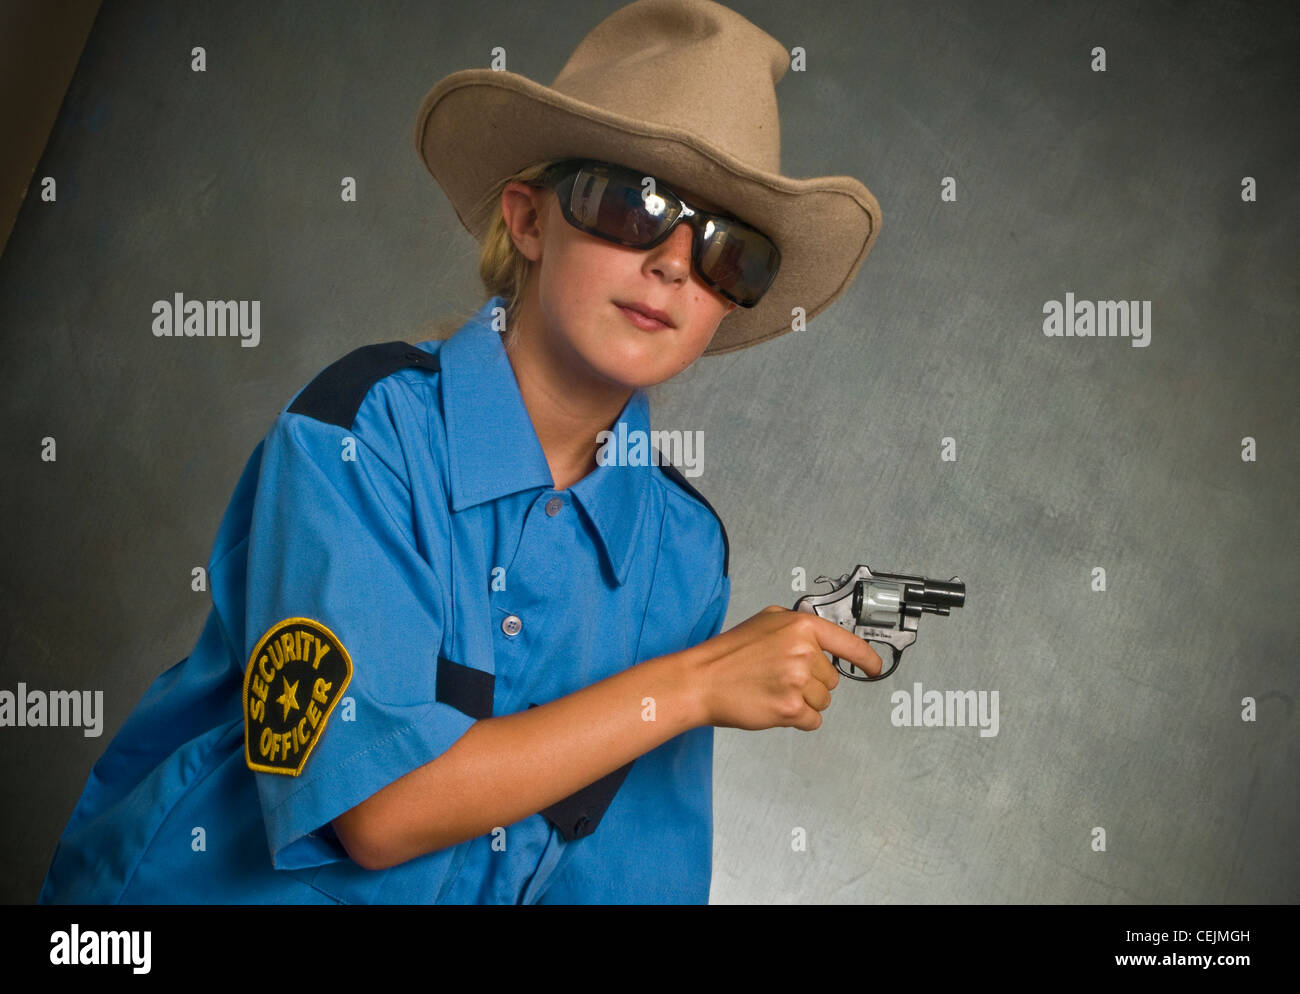 Jeune fille, chapeau de cowboy, gun, lunettes de soleil Banque D'Images